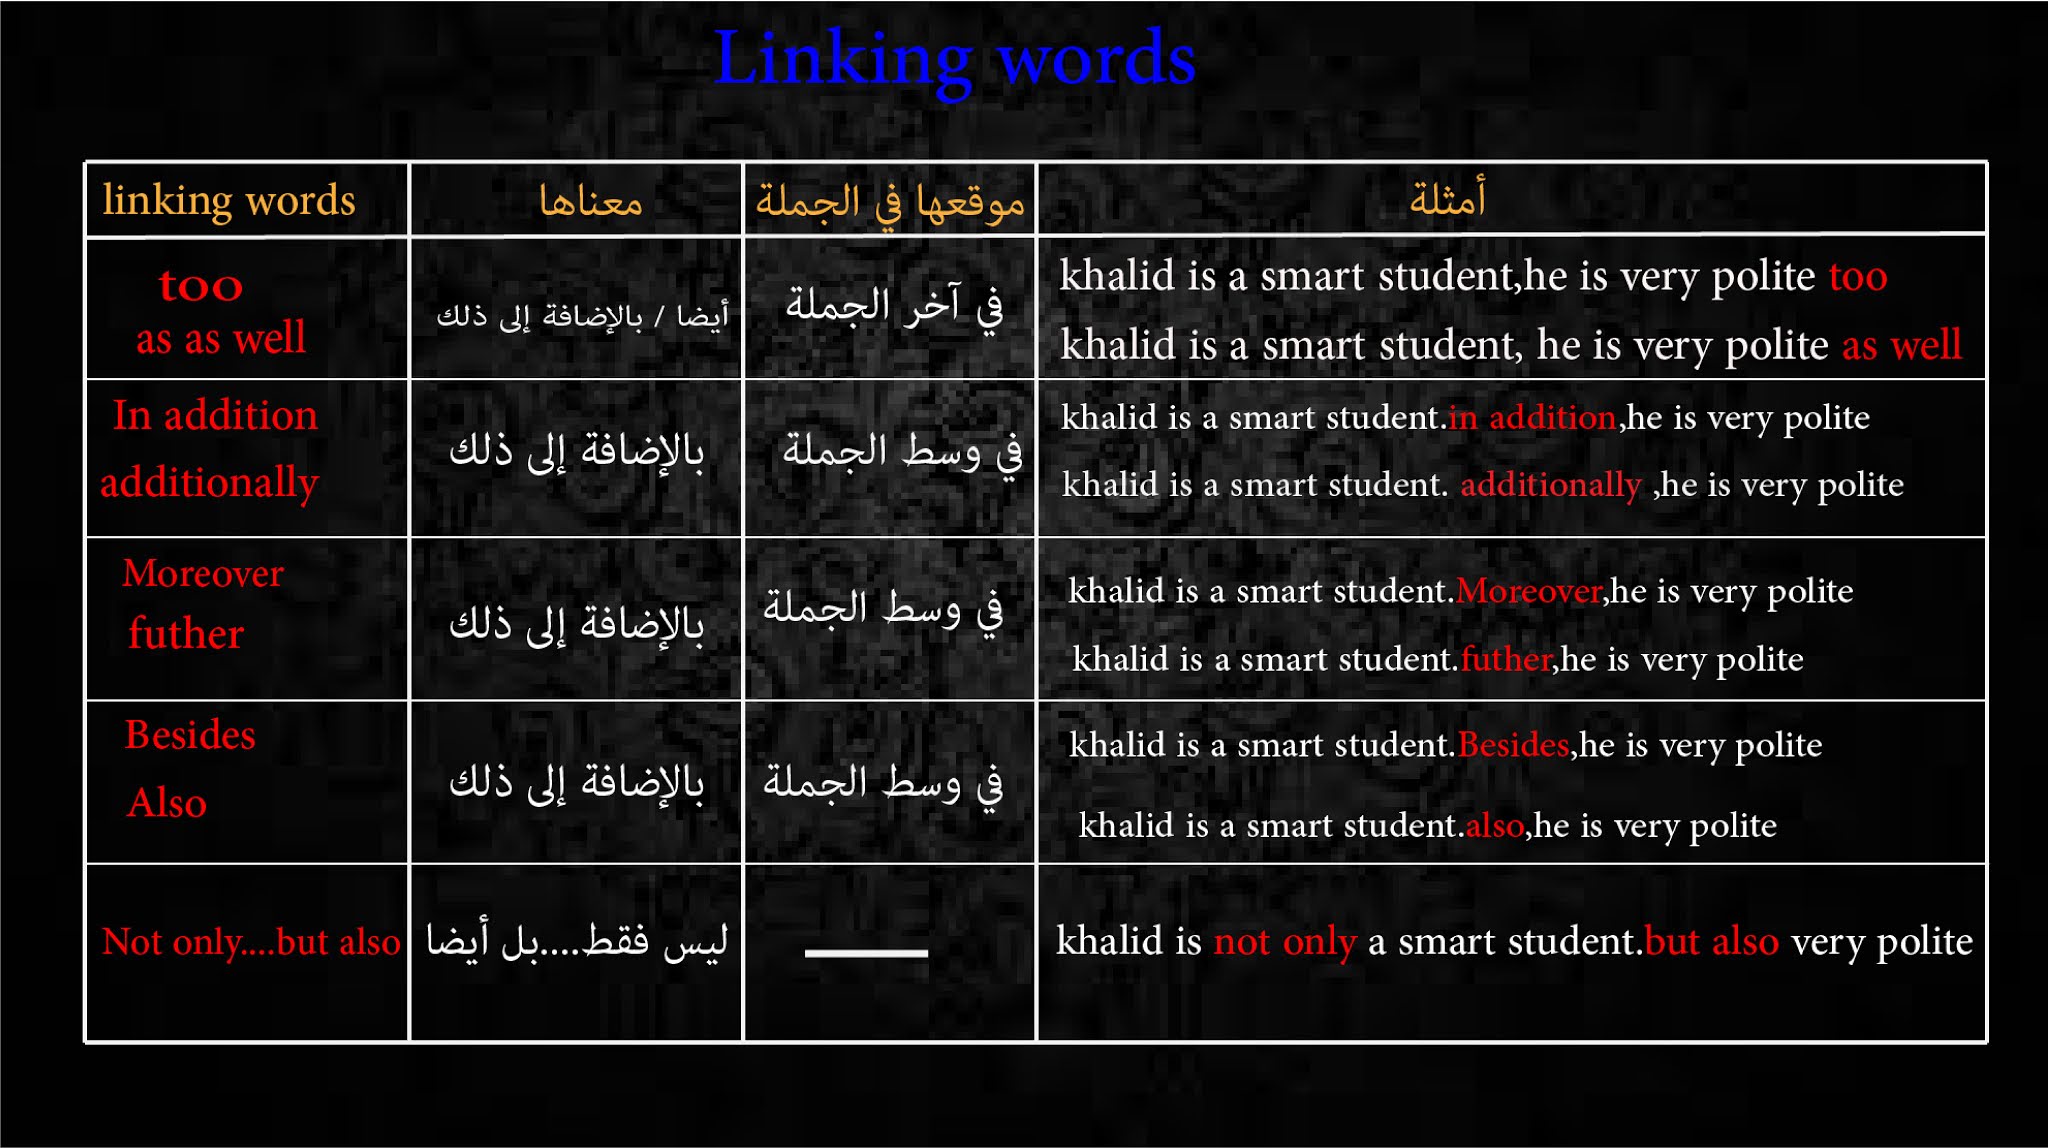 أبسط شرح لدرس أدوات الربط في اللغة االإنجليزية Linking words in English